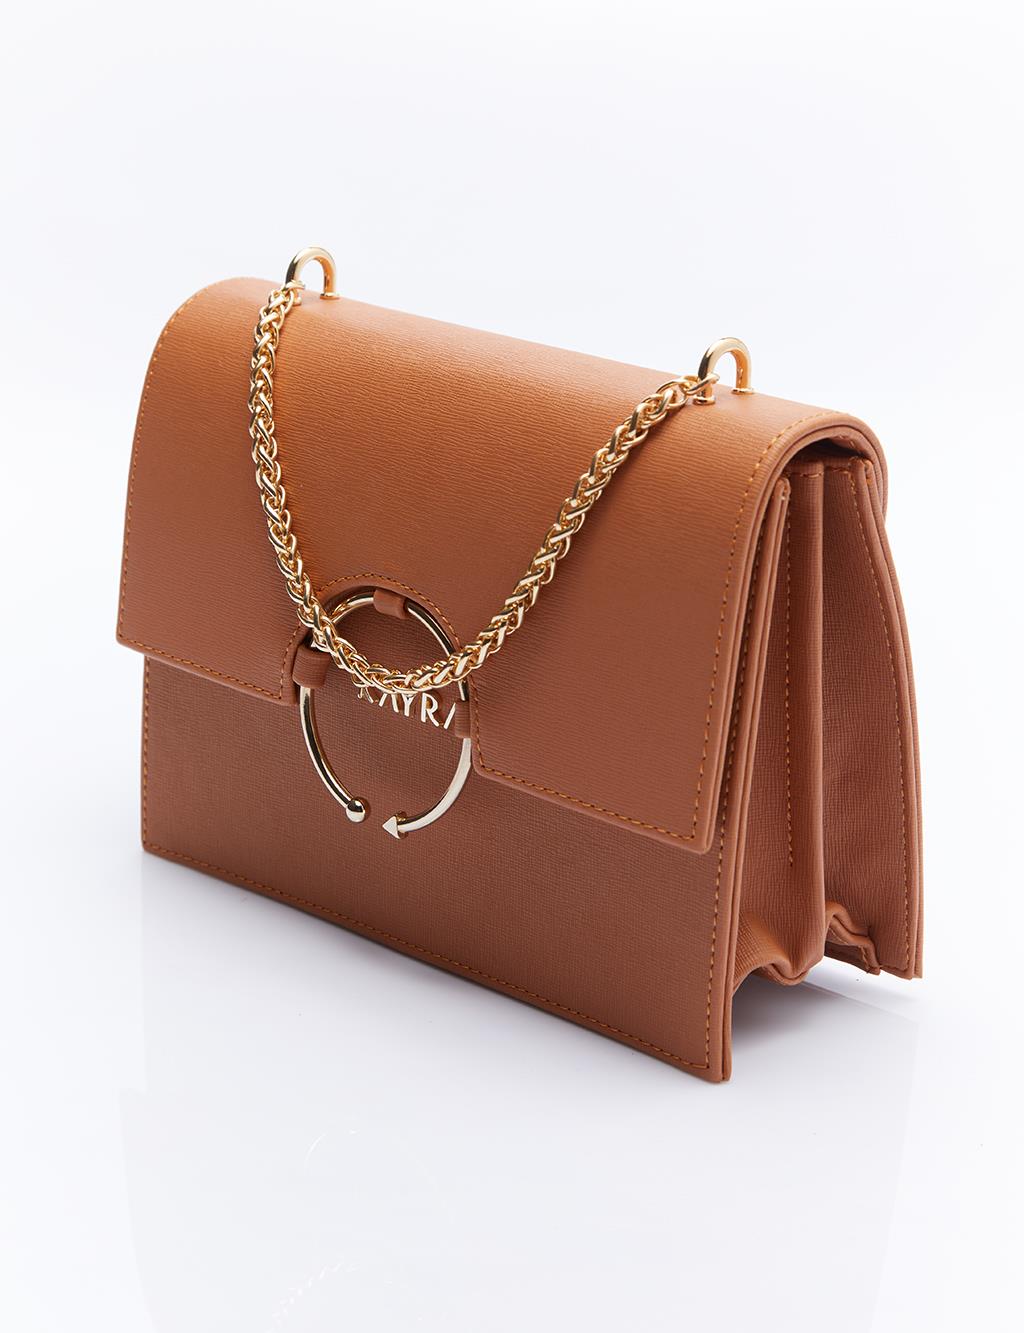 Дизайнерская сумка с ручкой-цепочкой, коричневая Kayra voria taba cilt sandalet